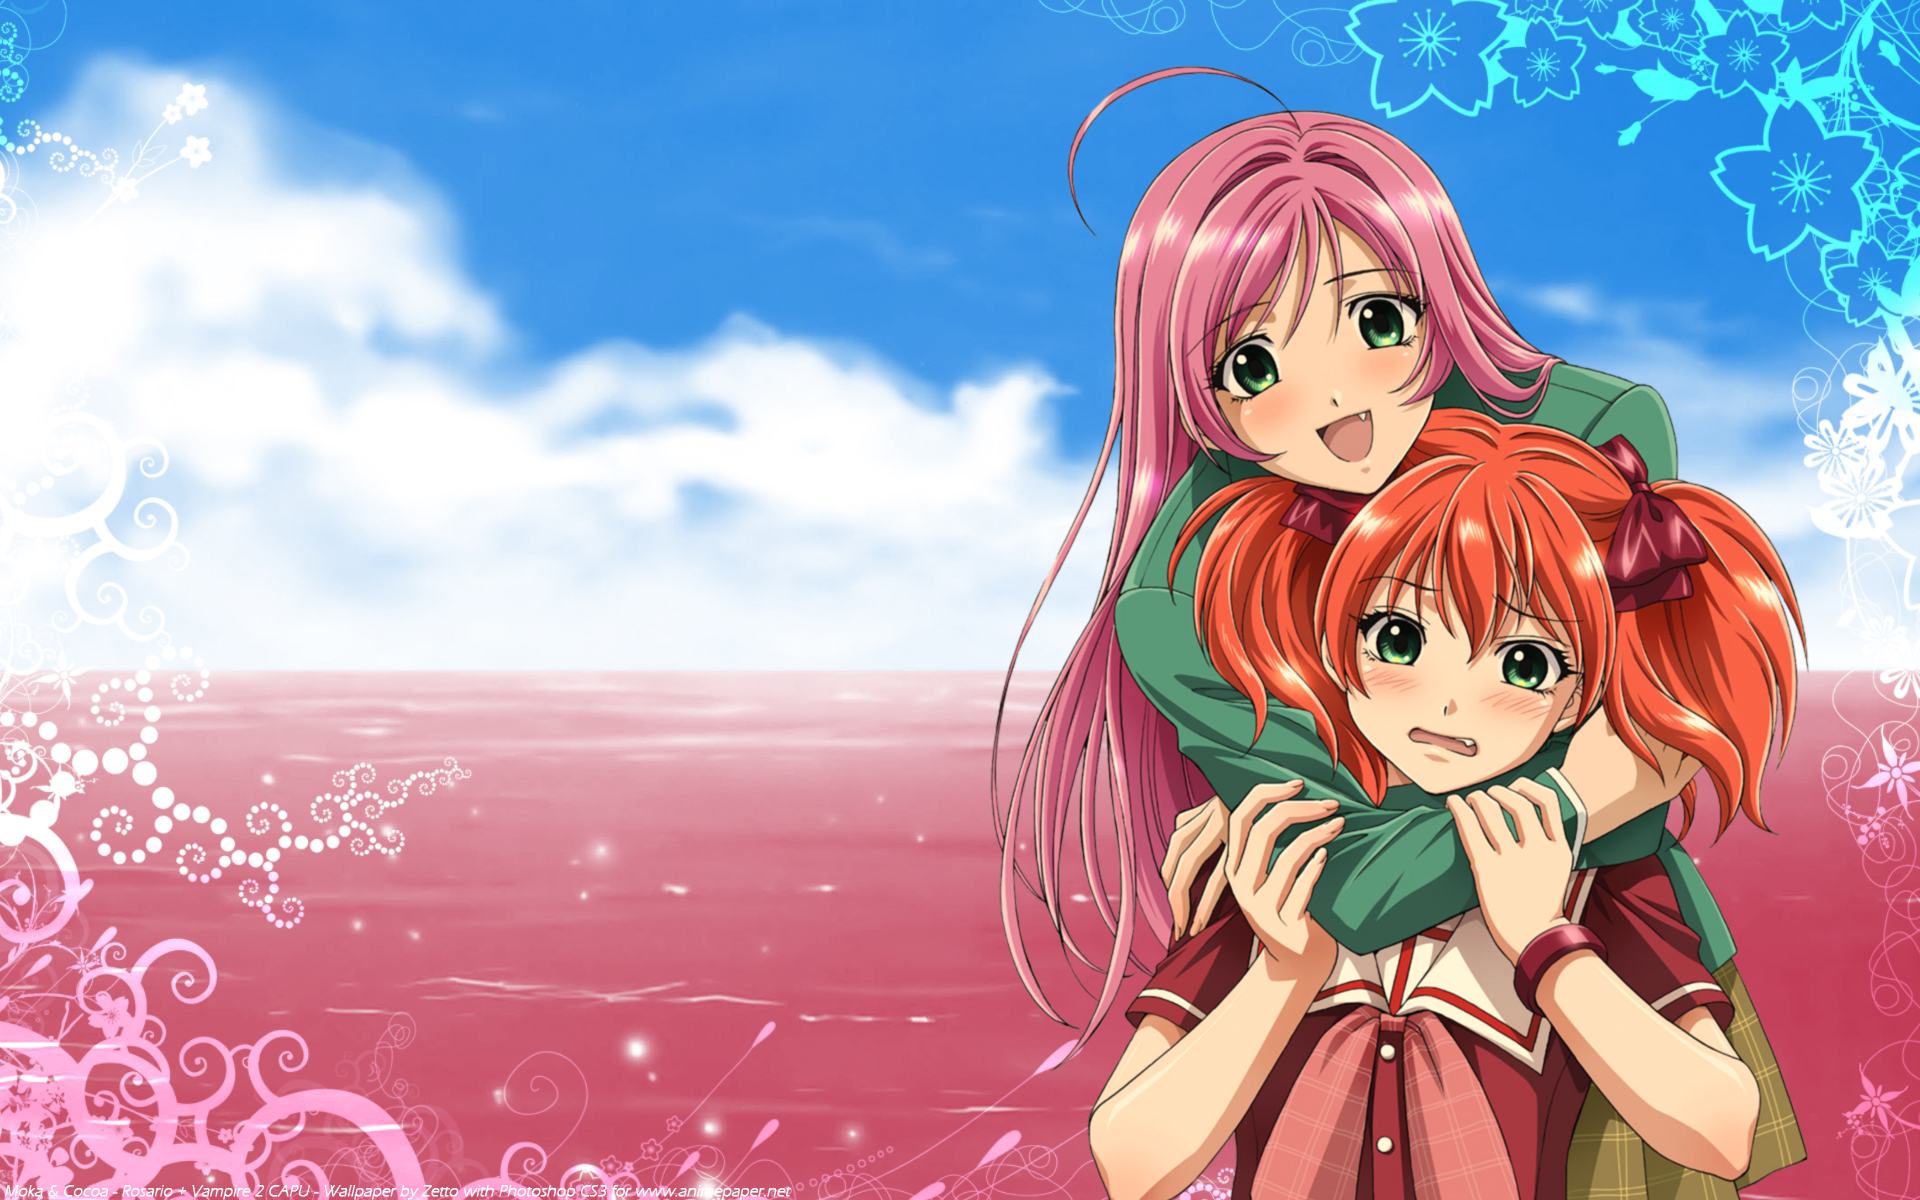 Anime characters Moka Akashiya and Kokoa Shuzen from Rosario + Vampire in a vibrant desktop wallpaper